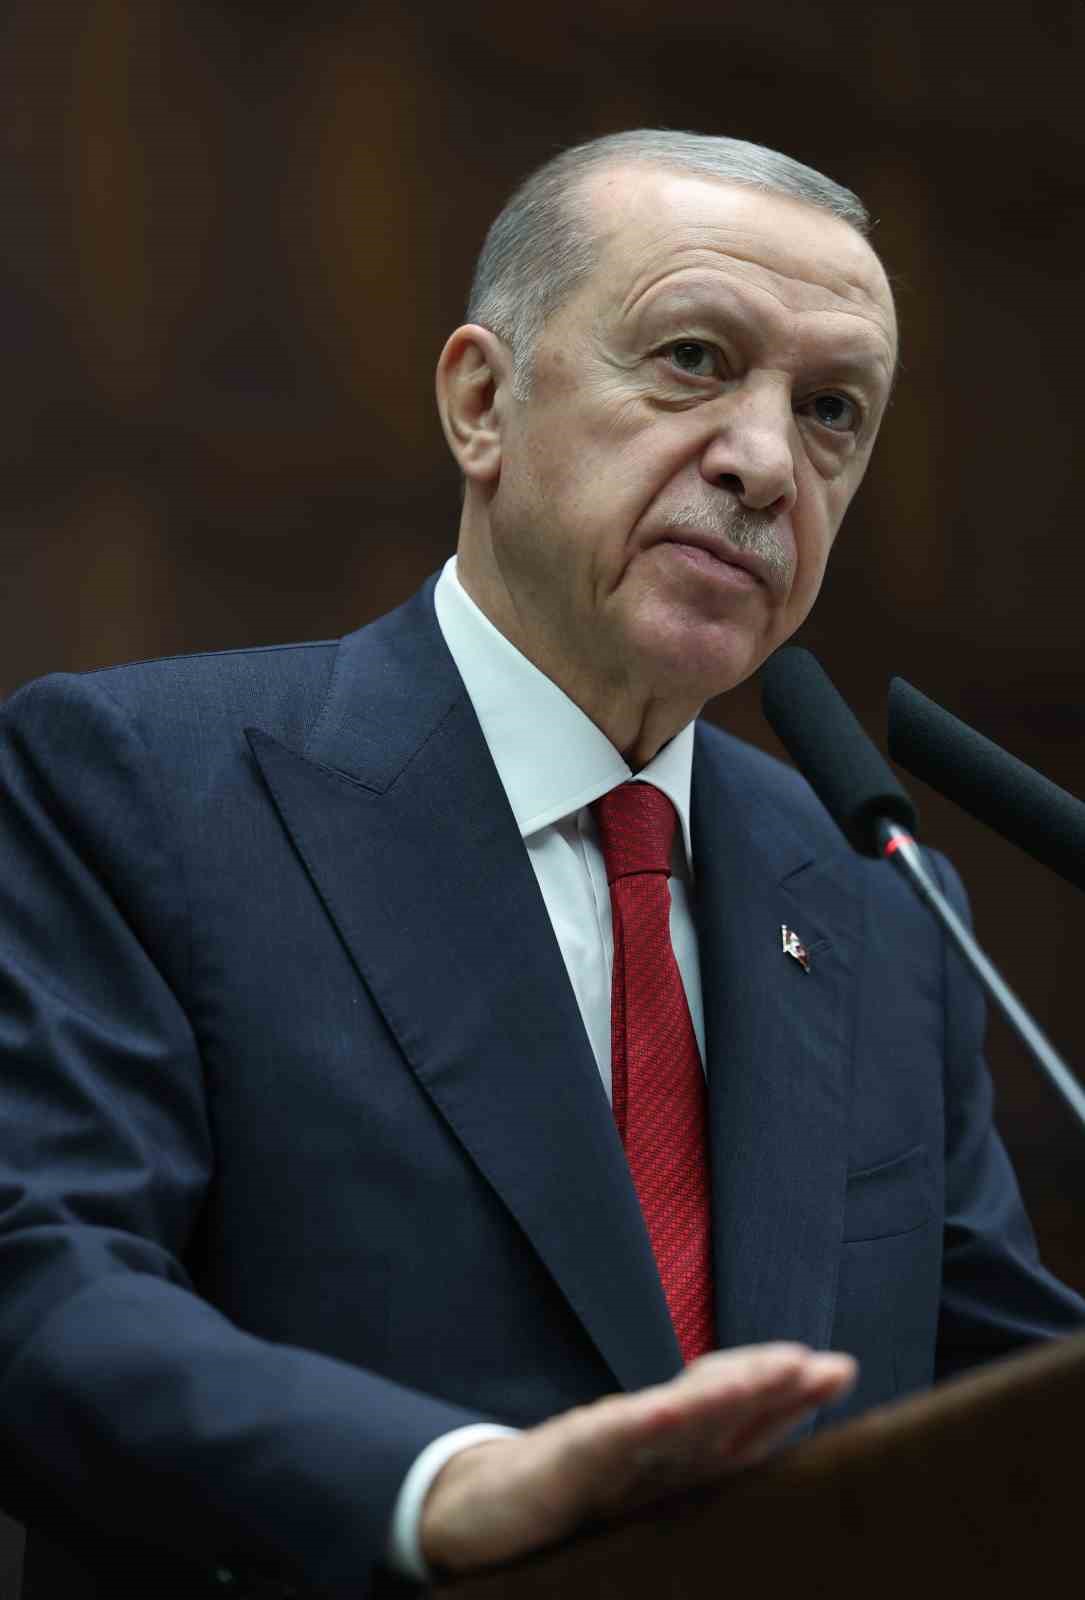 Cumhurbaşkanı Erdoğan: “Ben şu anda gönlüm ferah, açık olarak diyorum ki İsrail bir terör devletidir”